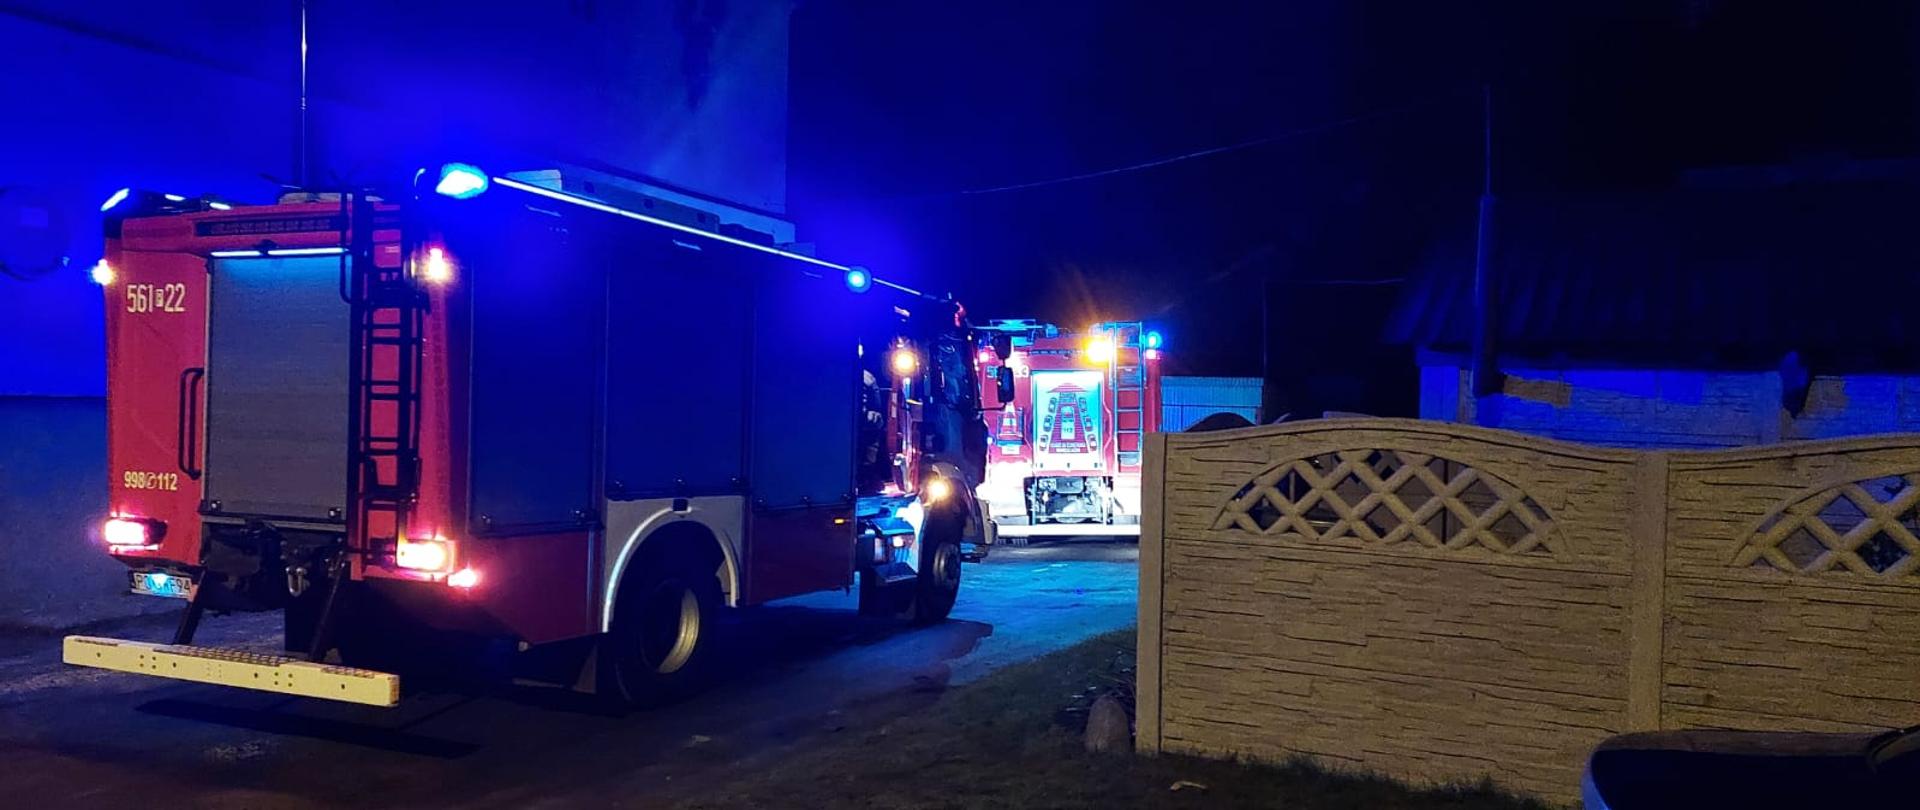 Noc dwa oświetlone niebieskimi sygnałami świetlnymi auta strażay pożarnej stoją w rzędzie przy budynku mieszkalnym